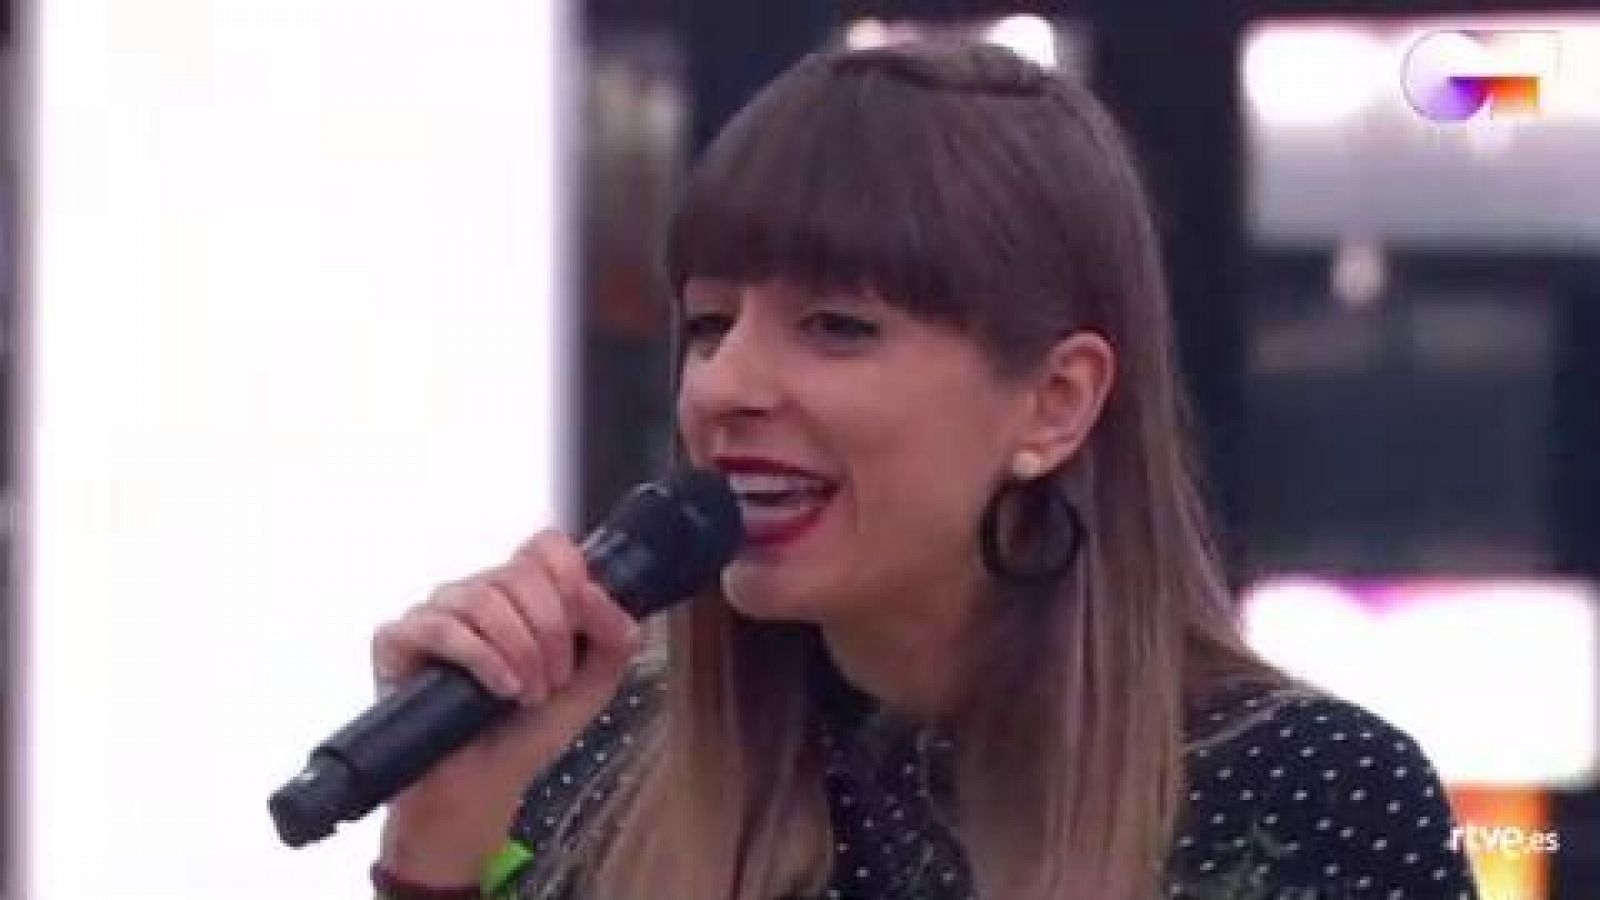 Maialen canta "Andar conmigo", de Julieta Venegas, en el primer pase de micros de la Gala 7 de Operación Triunfo 2020